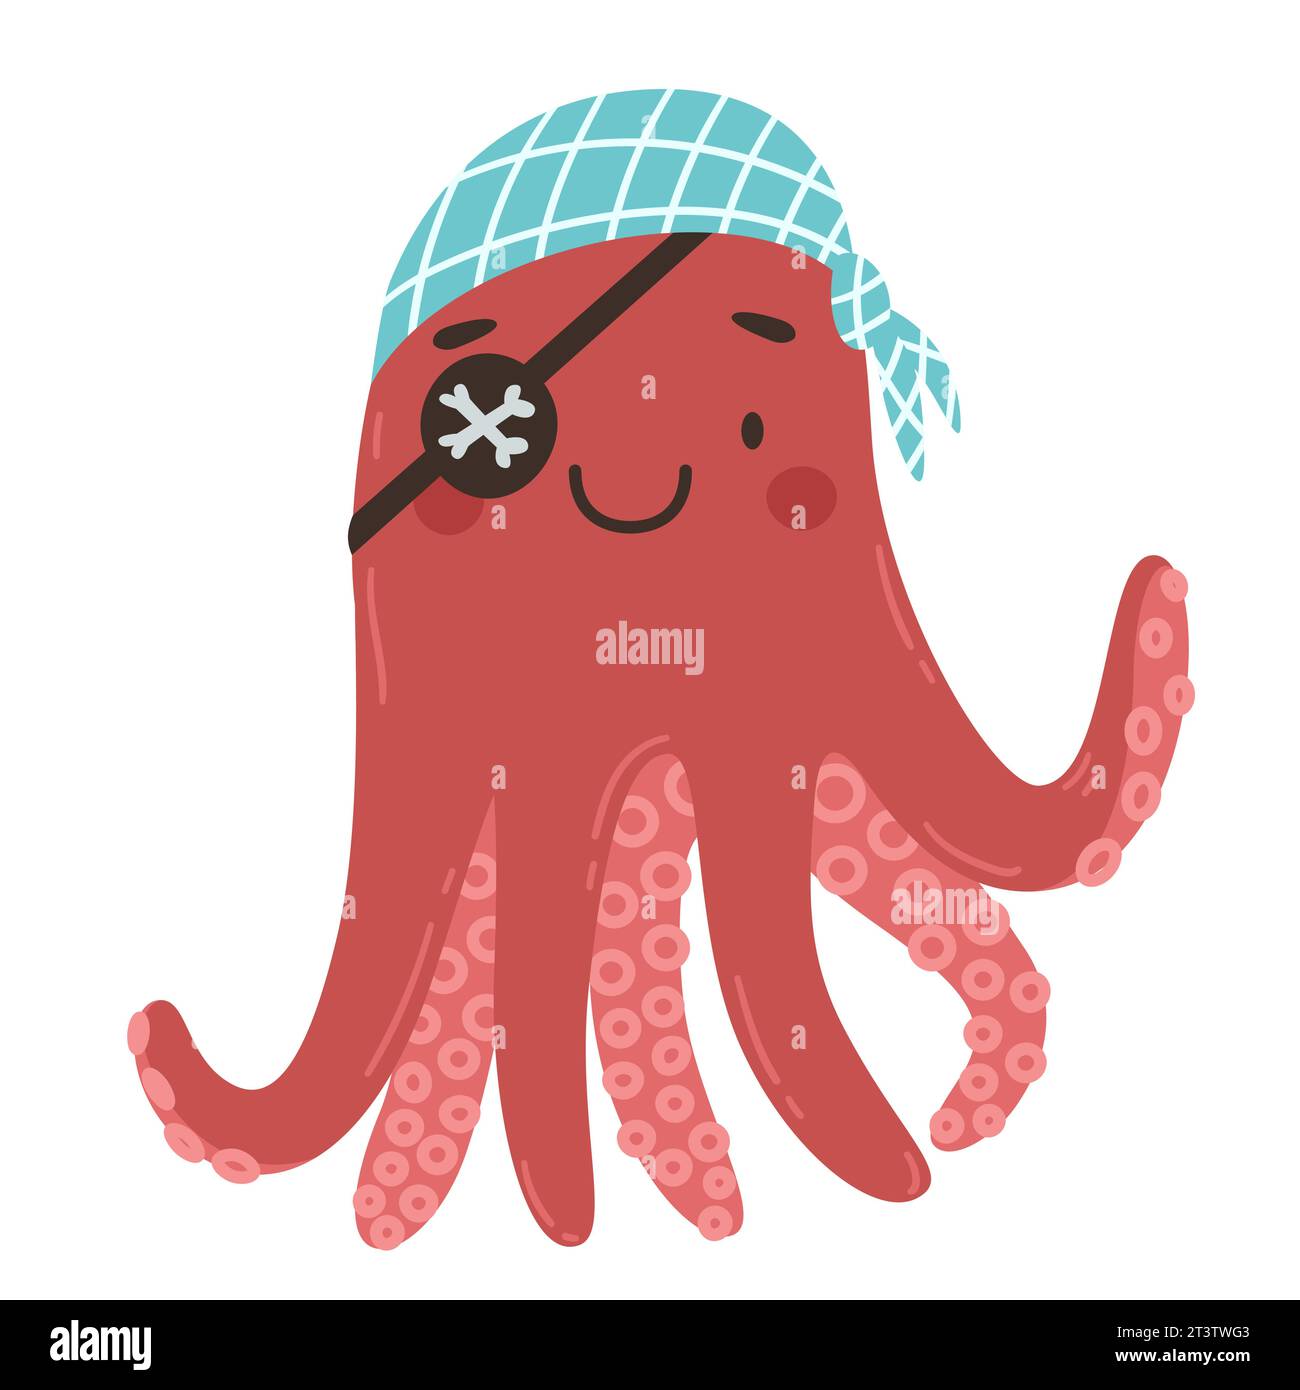 Niedlicher Karikatur-Piraten-Oktopus mit Augenklappe und Bandana. Illustration des Zeichentrickvektors. Postkarte, Poster, Einladung, Aufkleber. Stock Vektor